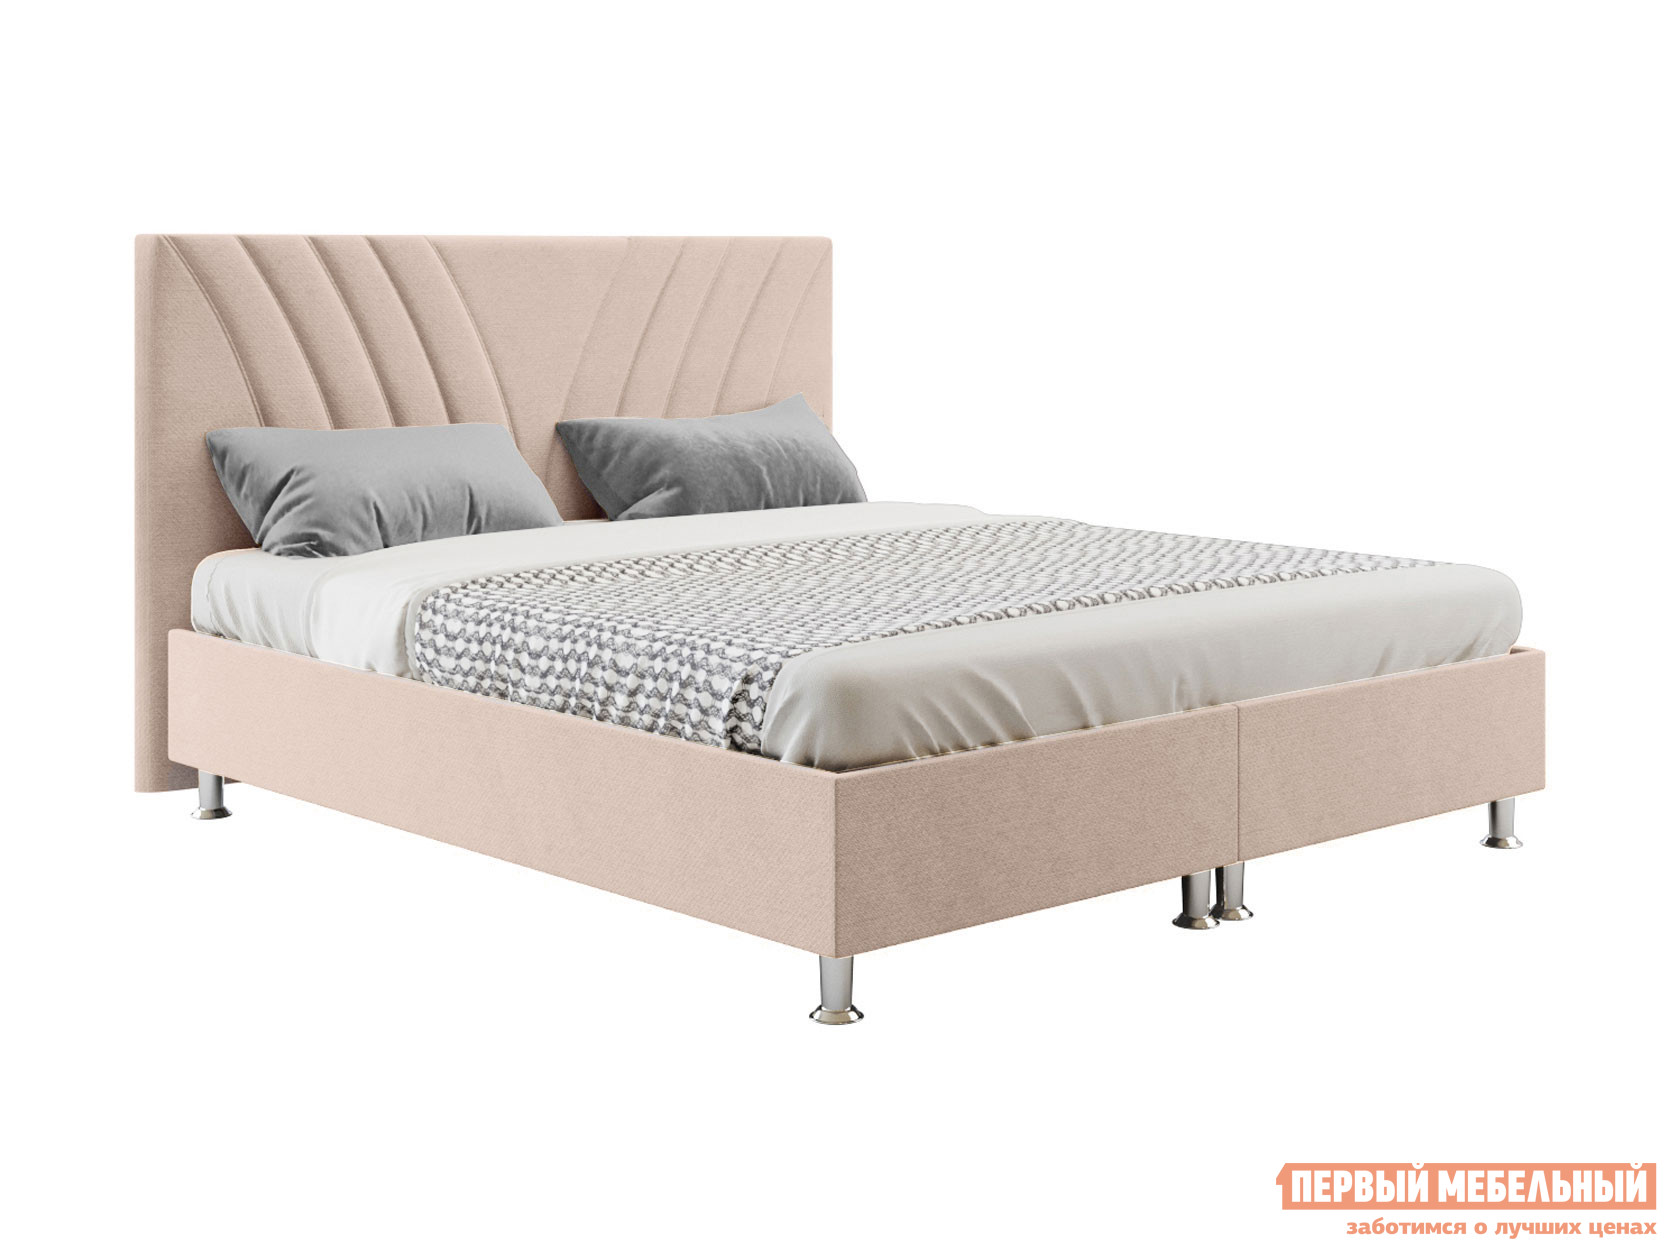 Двуспальная кровать  Кровать Версо с подъемным механизмом 140х200, 160х200, 180х200, 200х200 Бежево-розовый, 160х200 см